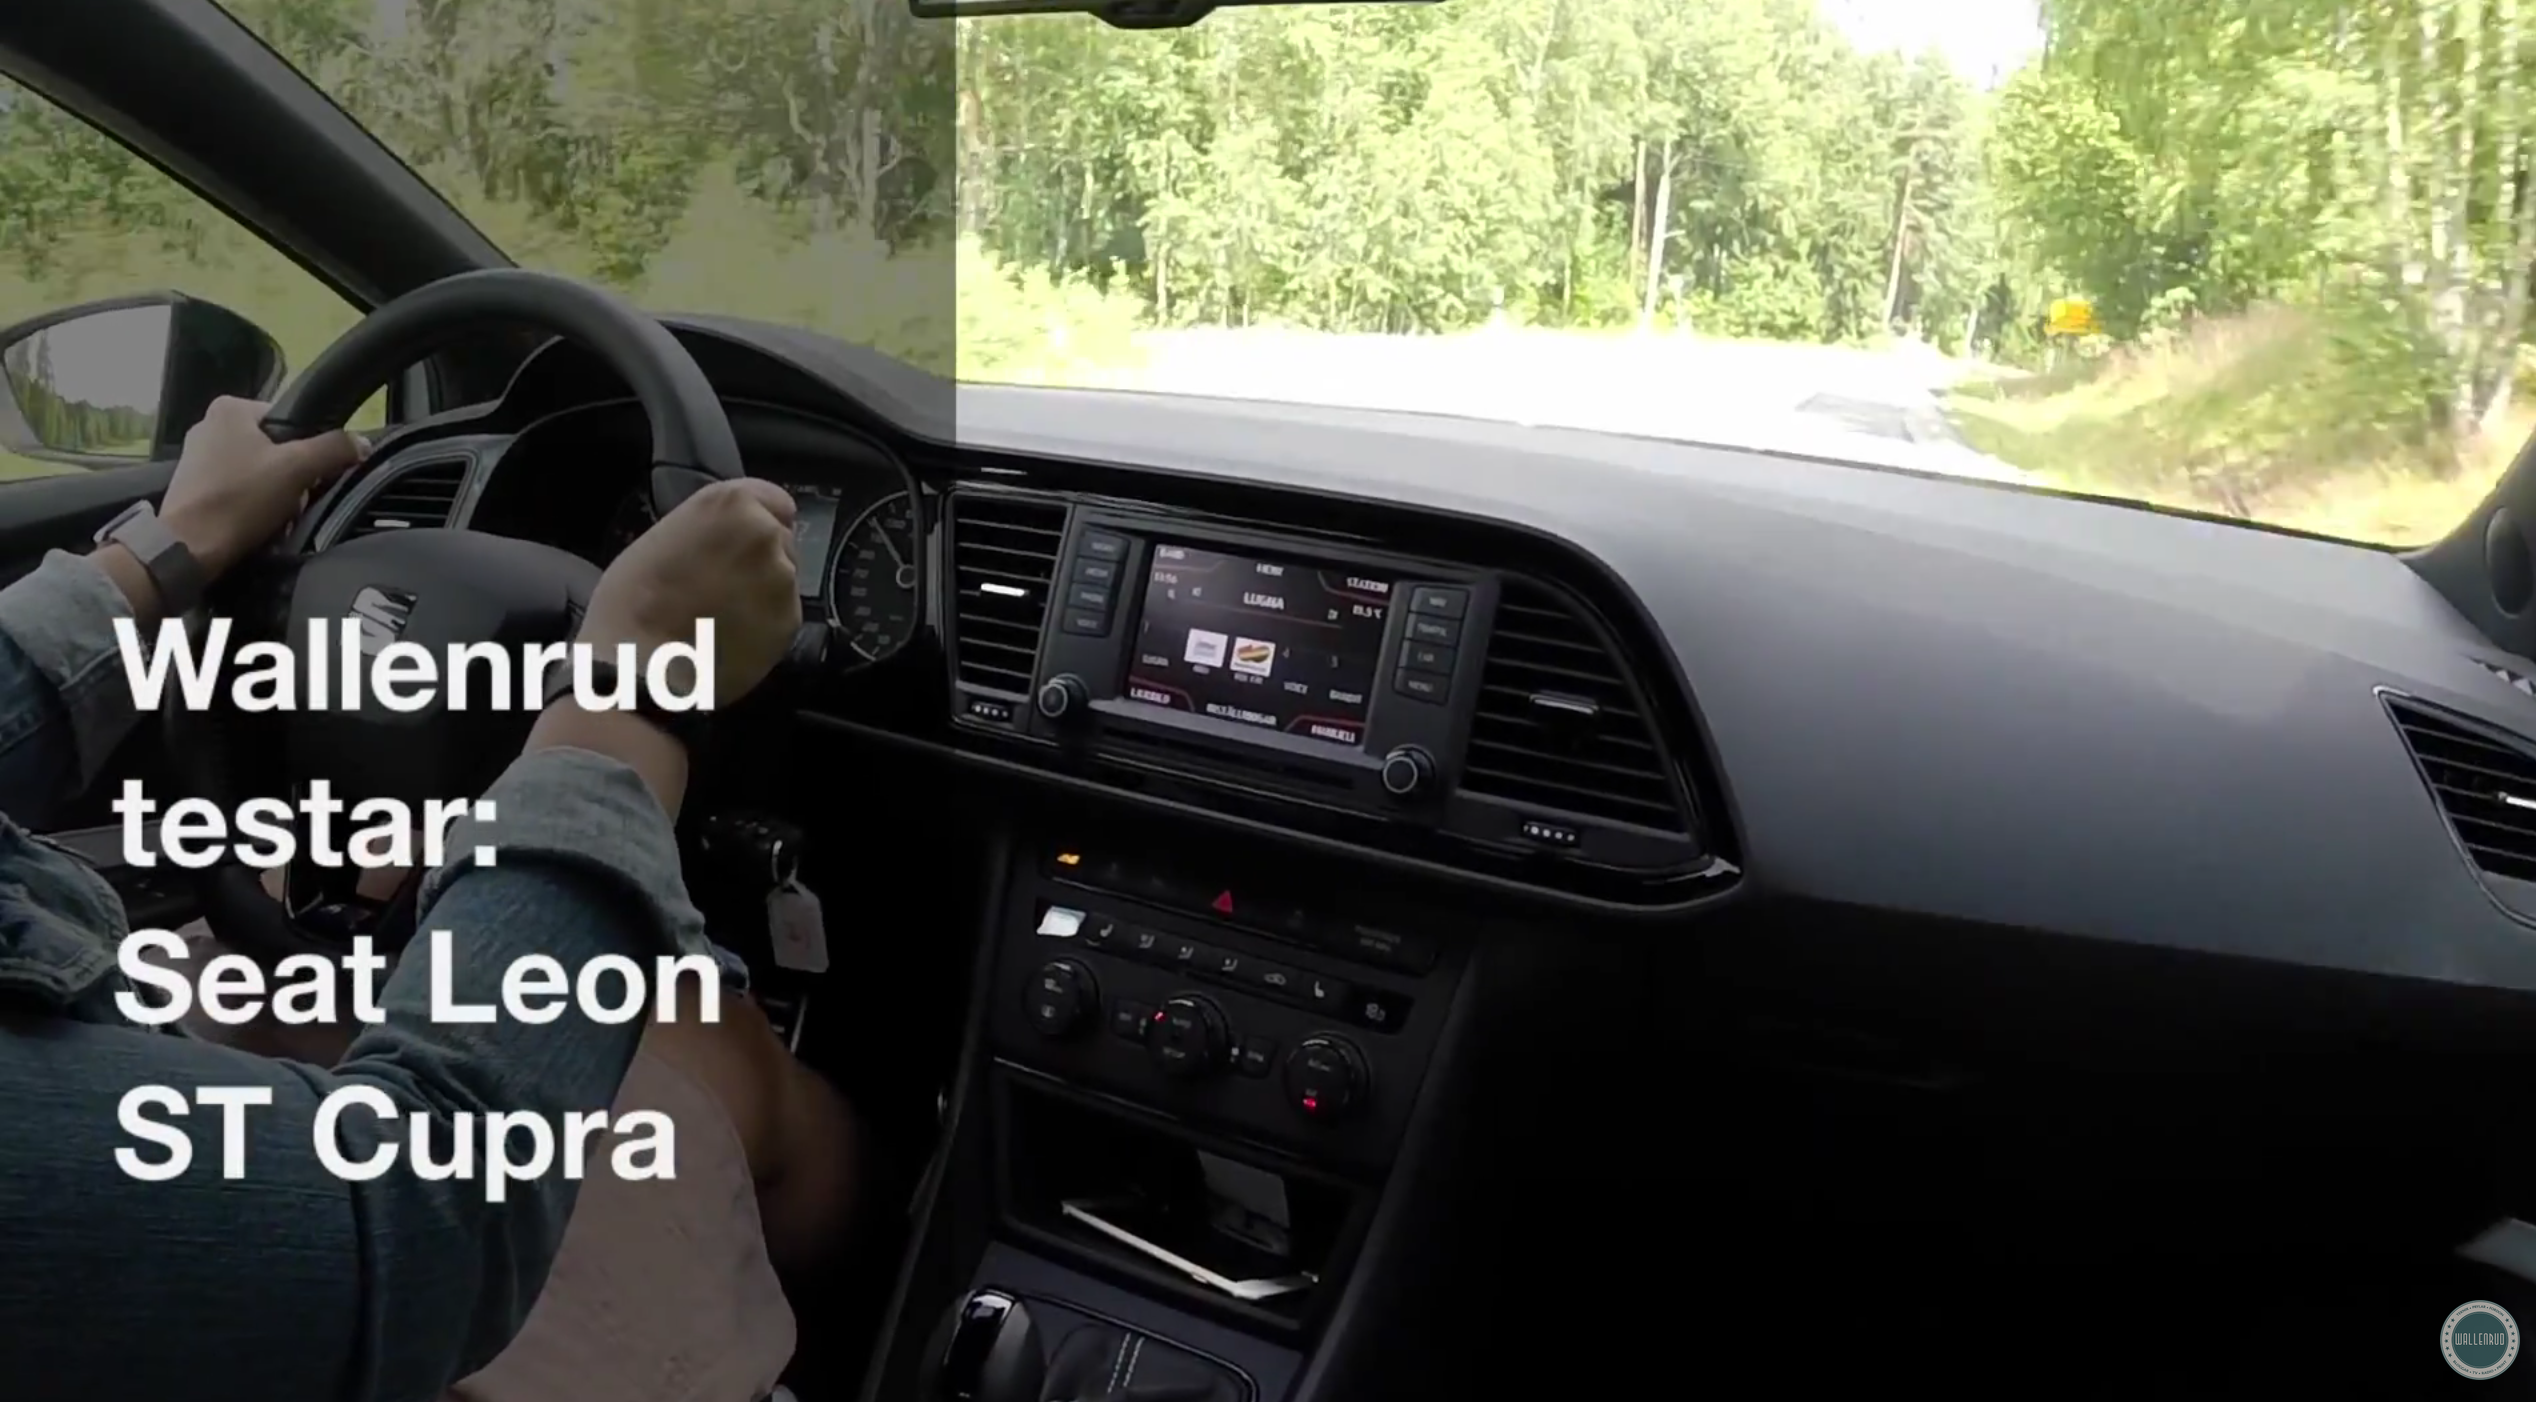 Wallenrud testar: Seat Leon ST Cupra (video)